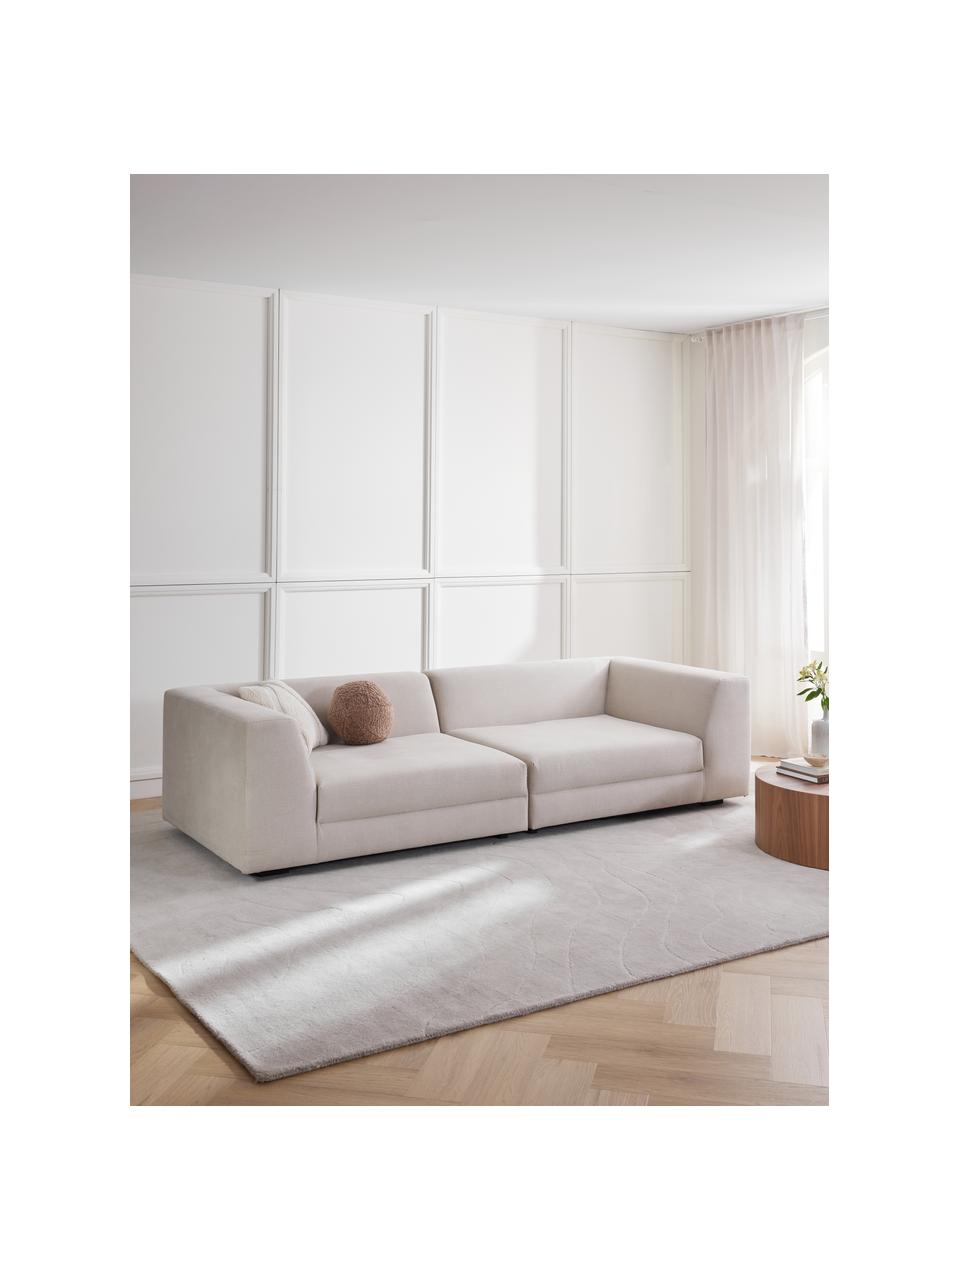 Sofa modułowa Grant (3-osobowa), Tapicerka: bawełna 20 000 cykli w te, Nogi: lite drewno bukowe, lakie, Beżowy, S 266 x G 106 cm